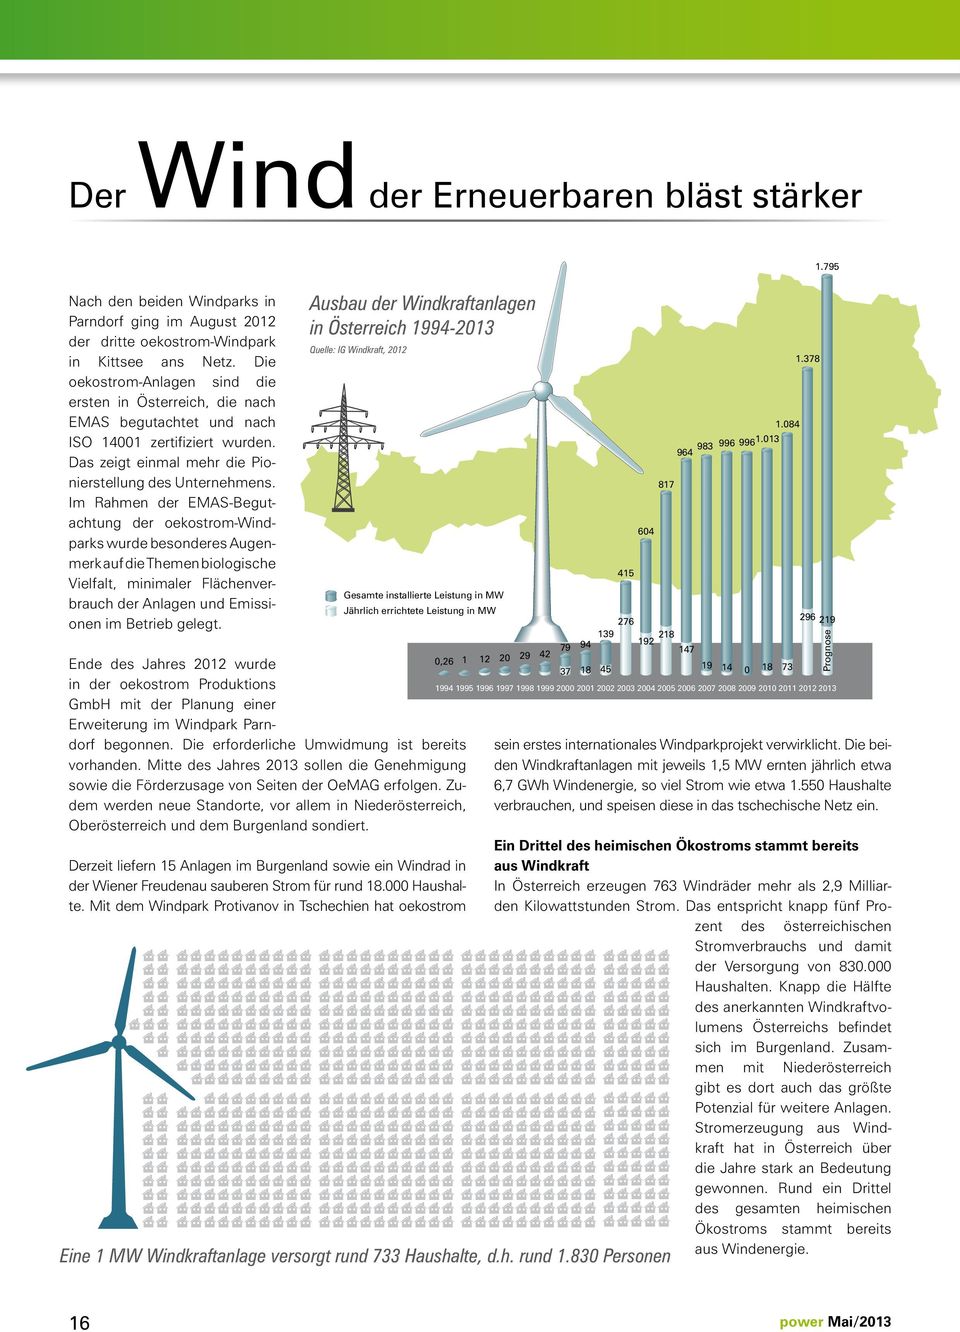 Im Rahmen der EMAS-Begutachtung der oekostrom-windparks wurde besonderes Augenmerk auf die Themen biologische Vielfalt, minimaler Flächenverbrauch der Anlagen und Emissionen im Betrieb gelegt.